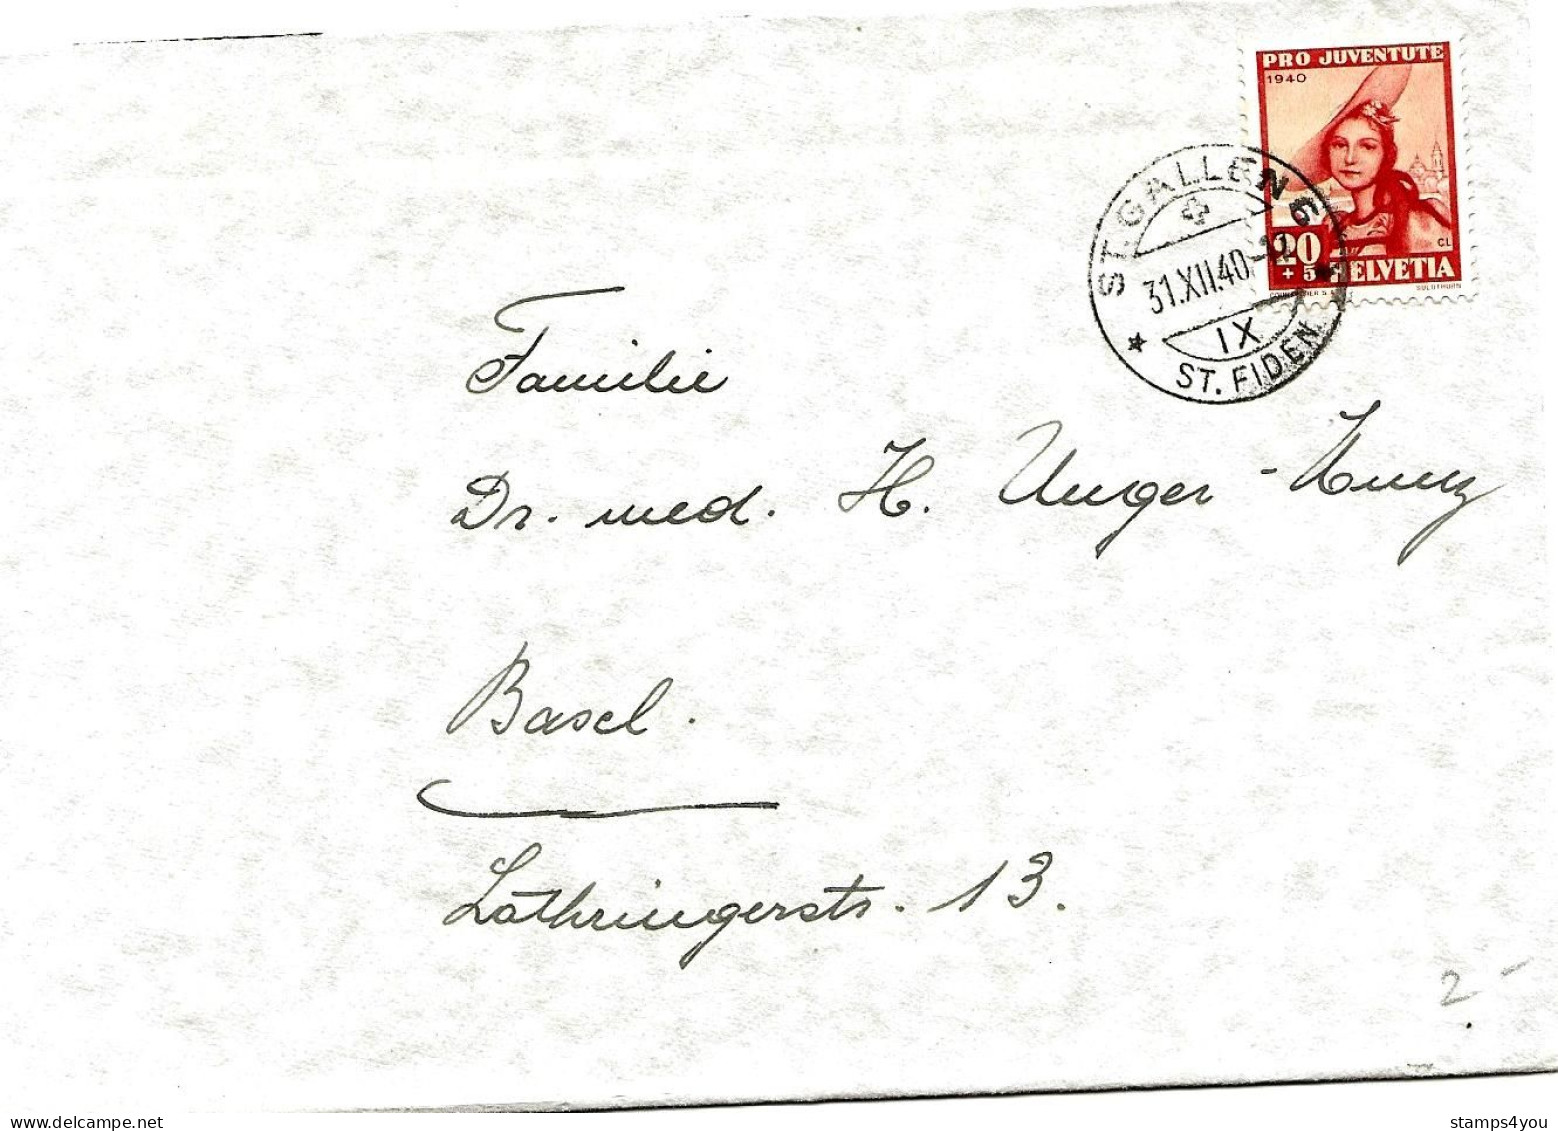 79 - 89 - Enveloppe Avec Timbre Pro Juventute 1940 - Cachet à Date St Gallen 31.12.40. - Cartas & Documentos